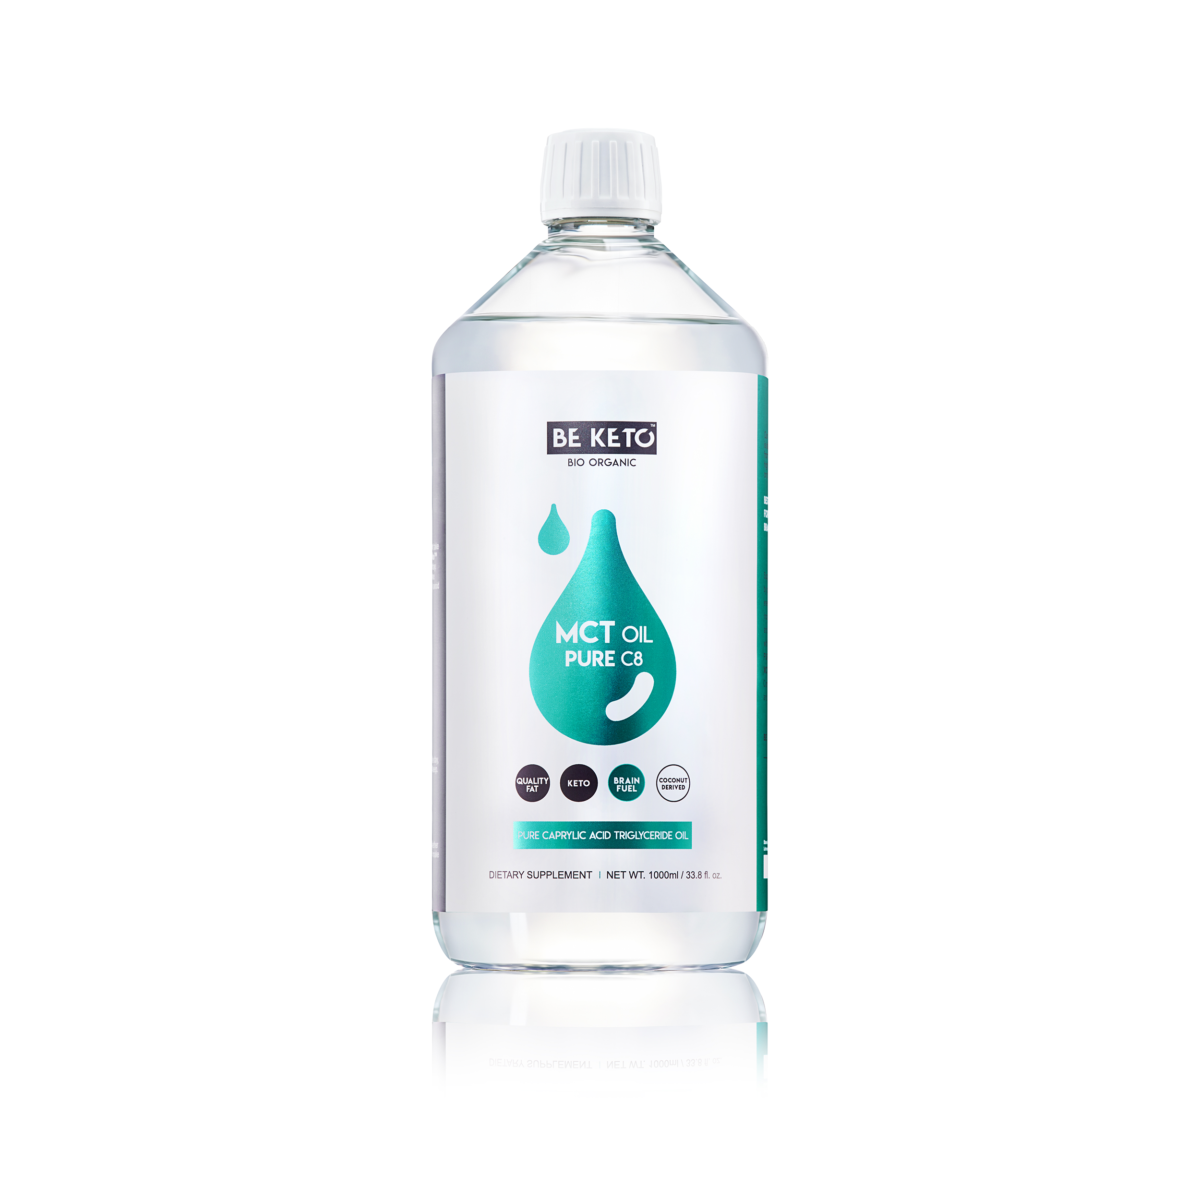 Olej MCT C8 100% od BeKeto. W plastikowej butelce z dużą etykietą znajduje się 1000ml produktu.